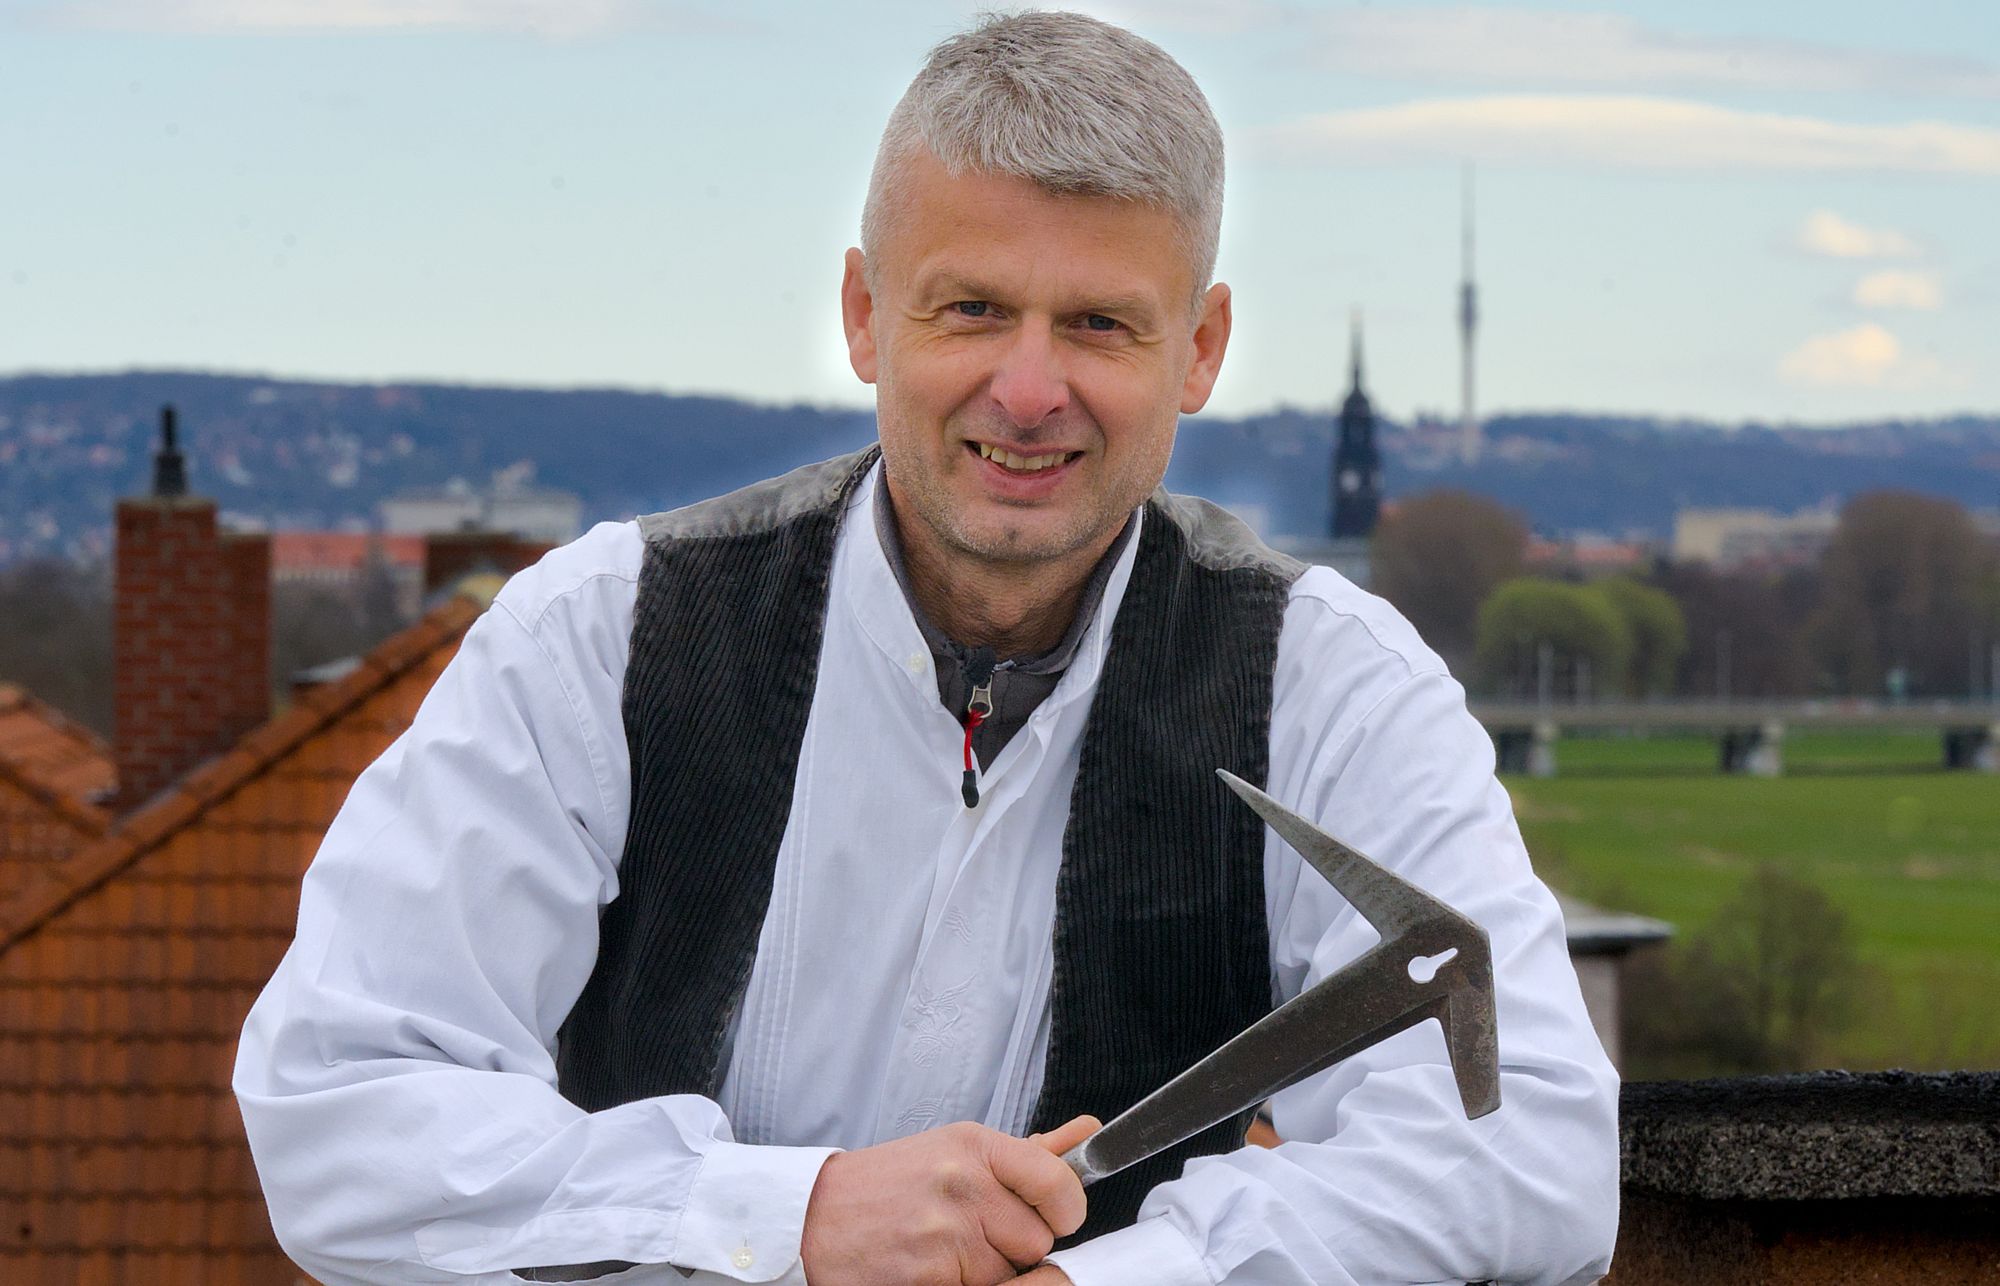 Pieschener Spitzenkandidat für die Freien Wähler für Stadtrat und Stadtbezirksbeirat: Tino Jasef